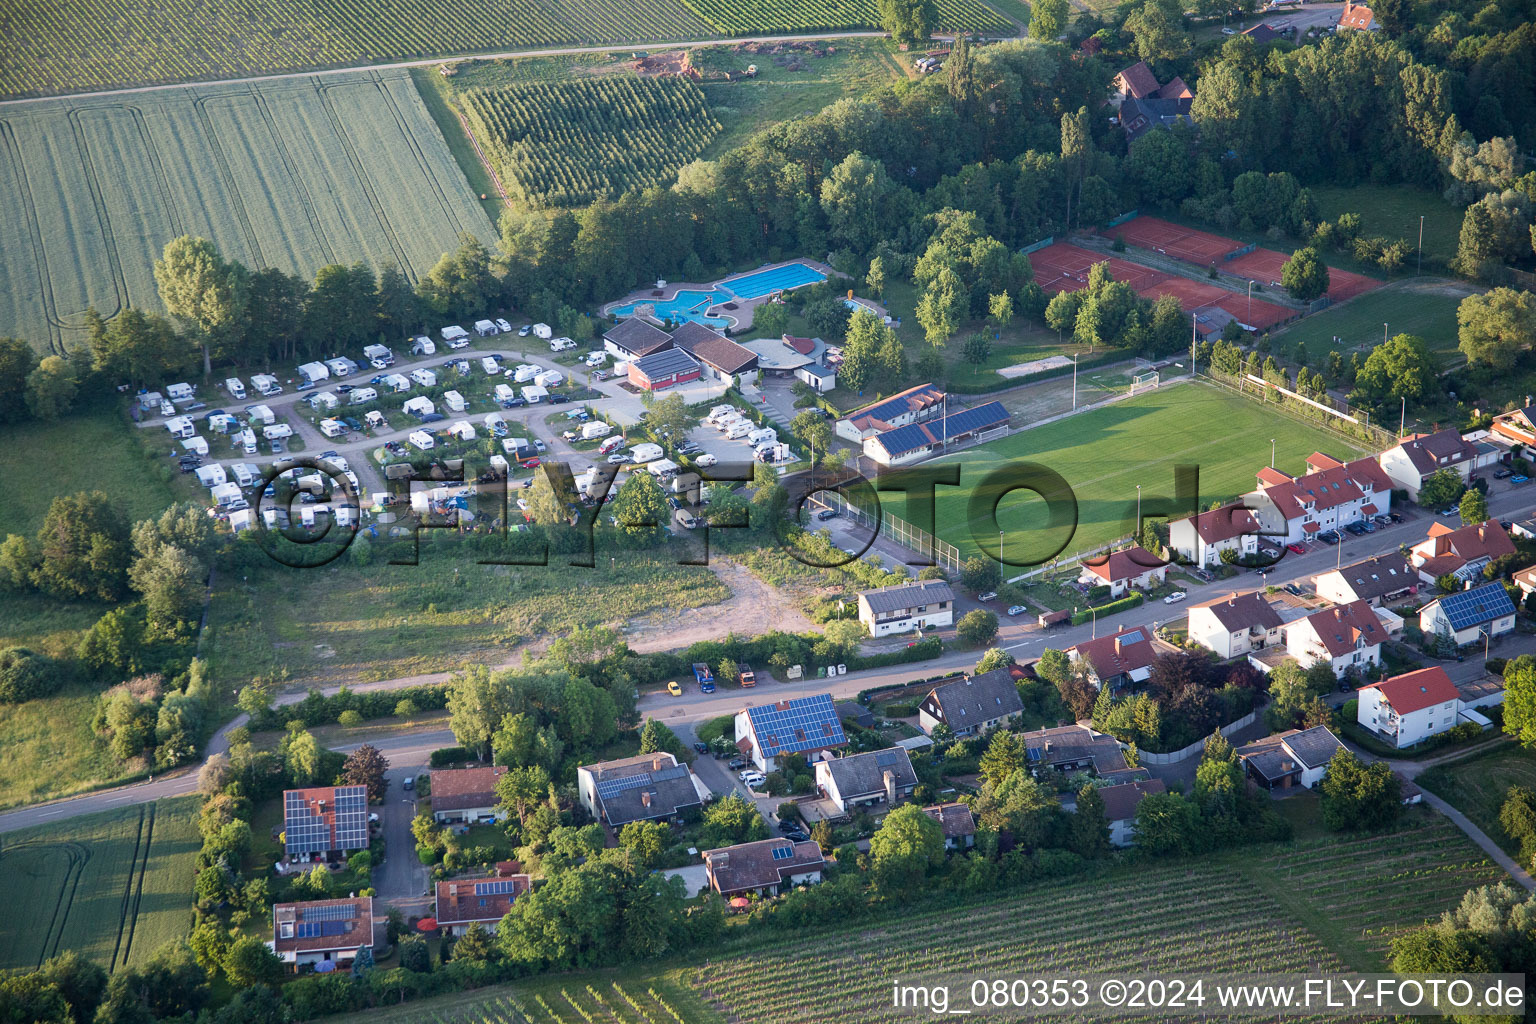 Camping dans le Klingbachtal à le quartier Klingen in Heuchelheim-Klingen dans le département Rhénanie-Palatinat, Allemagne depuis l'avion